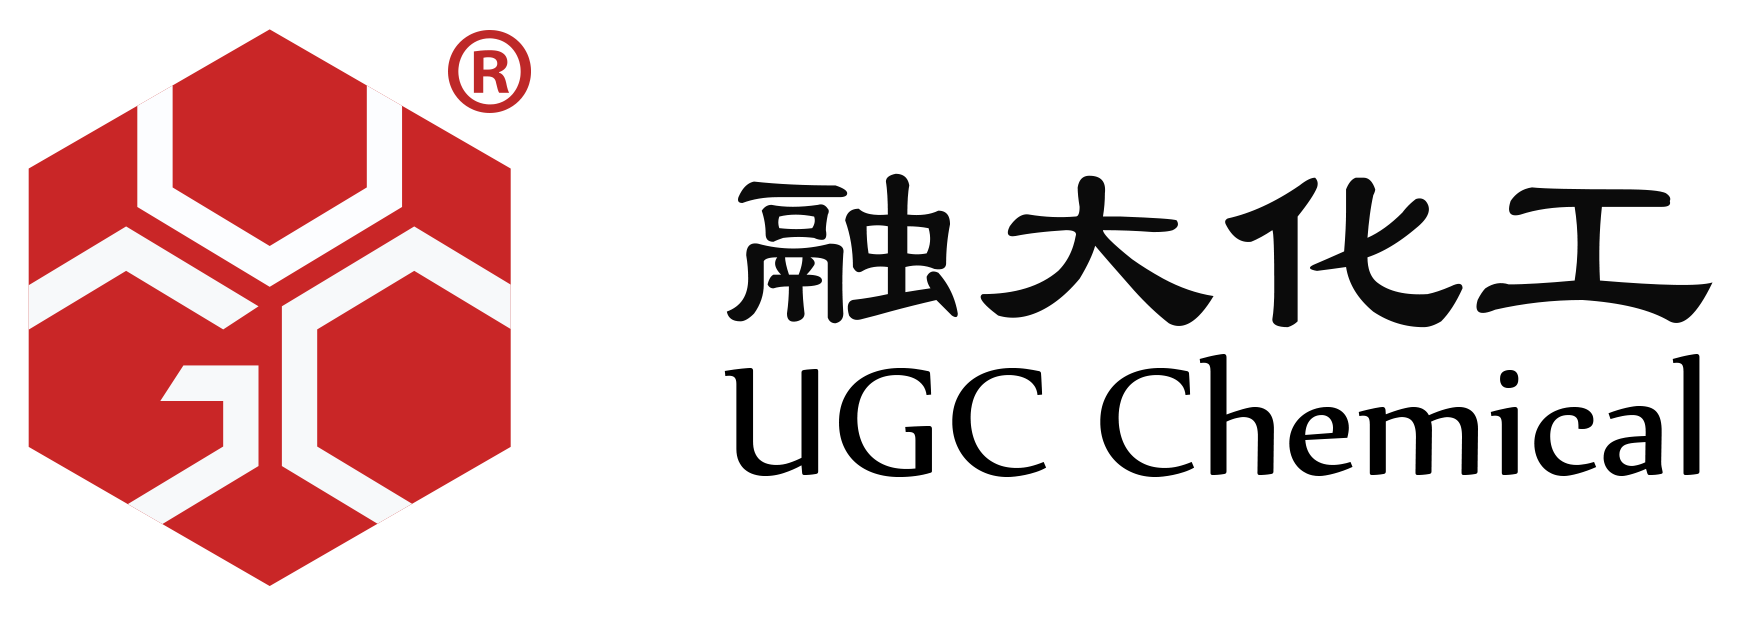 广州融大化工有限公司_logo